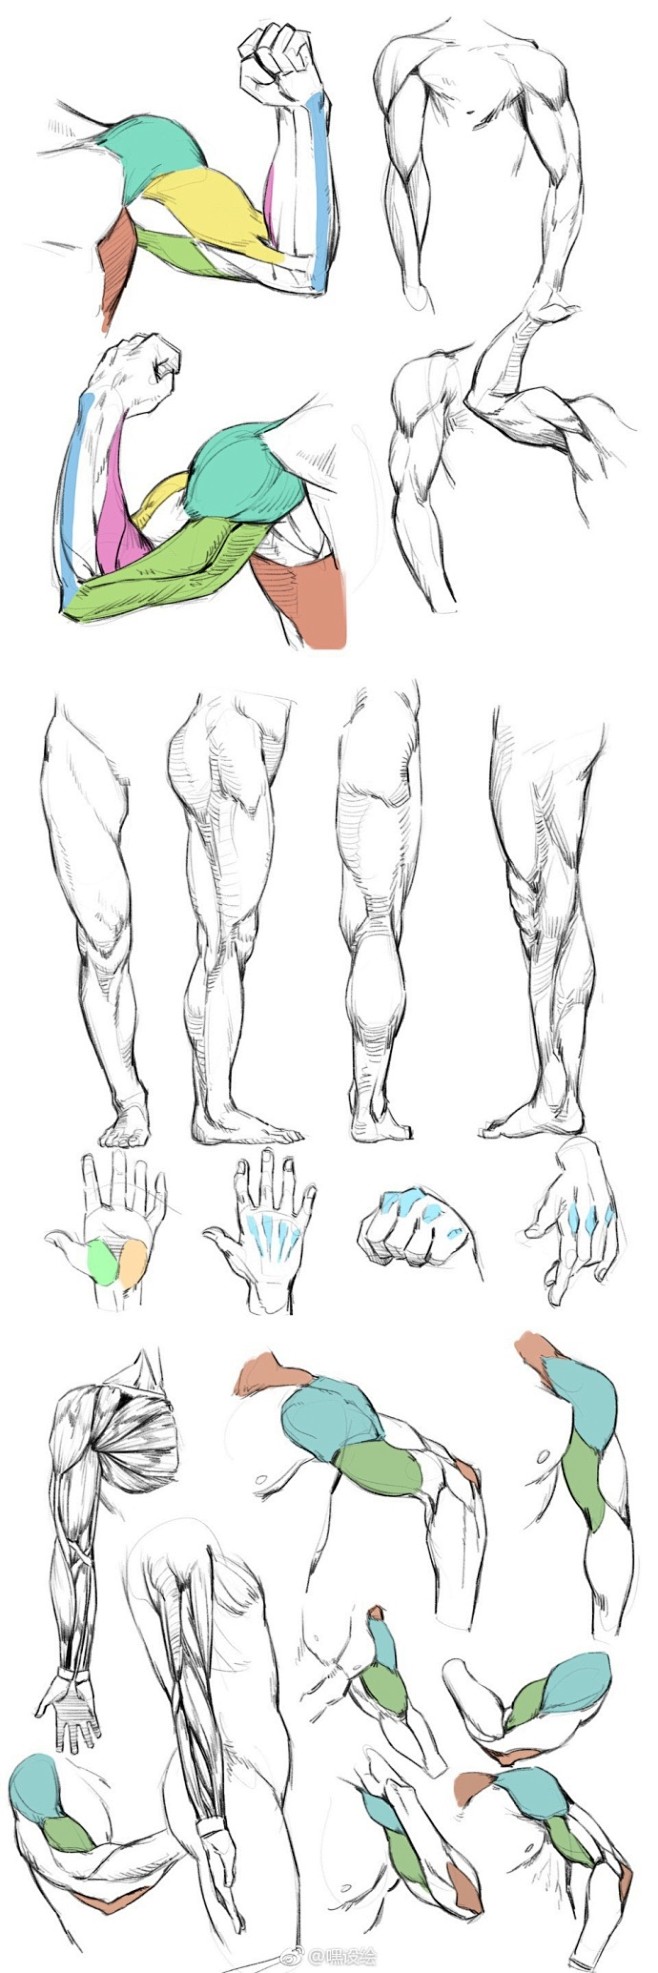 手、手臂、腿、上半身动态与肌肉、体块的画...